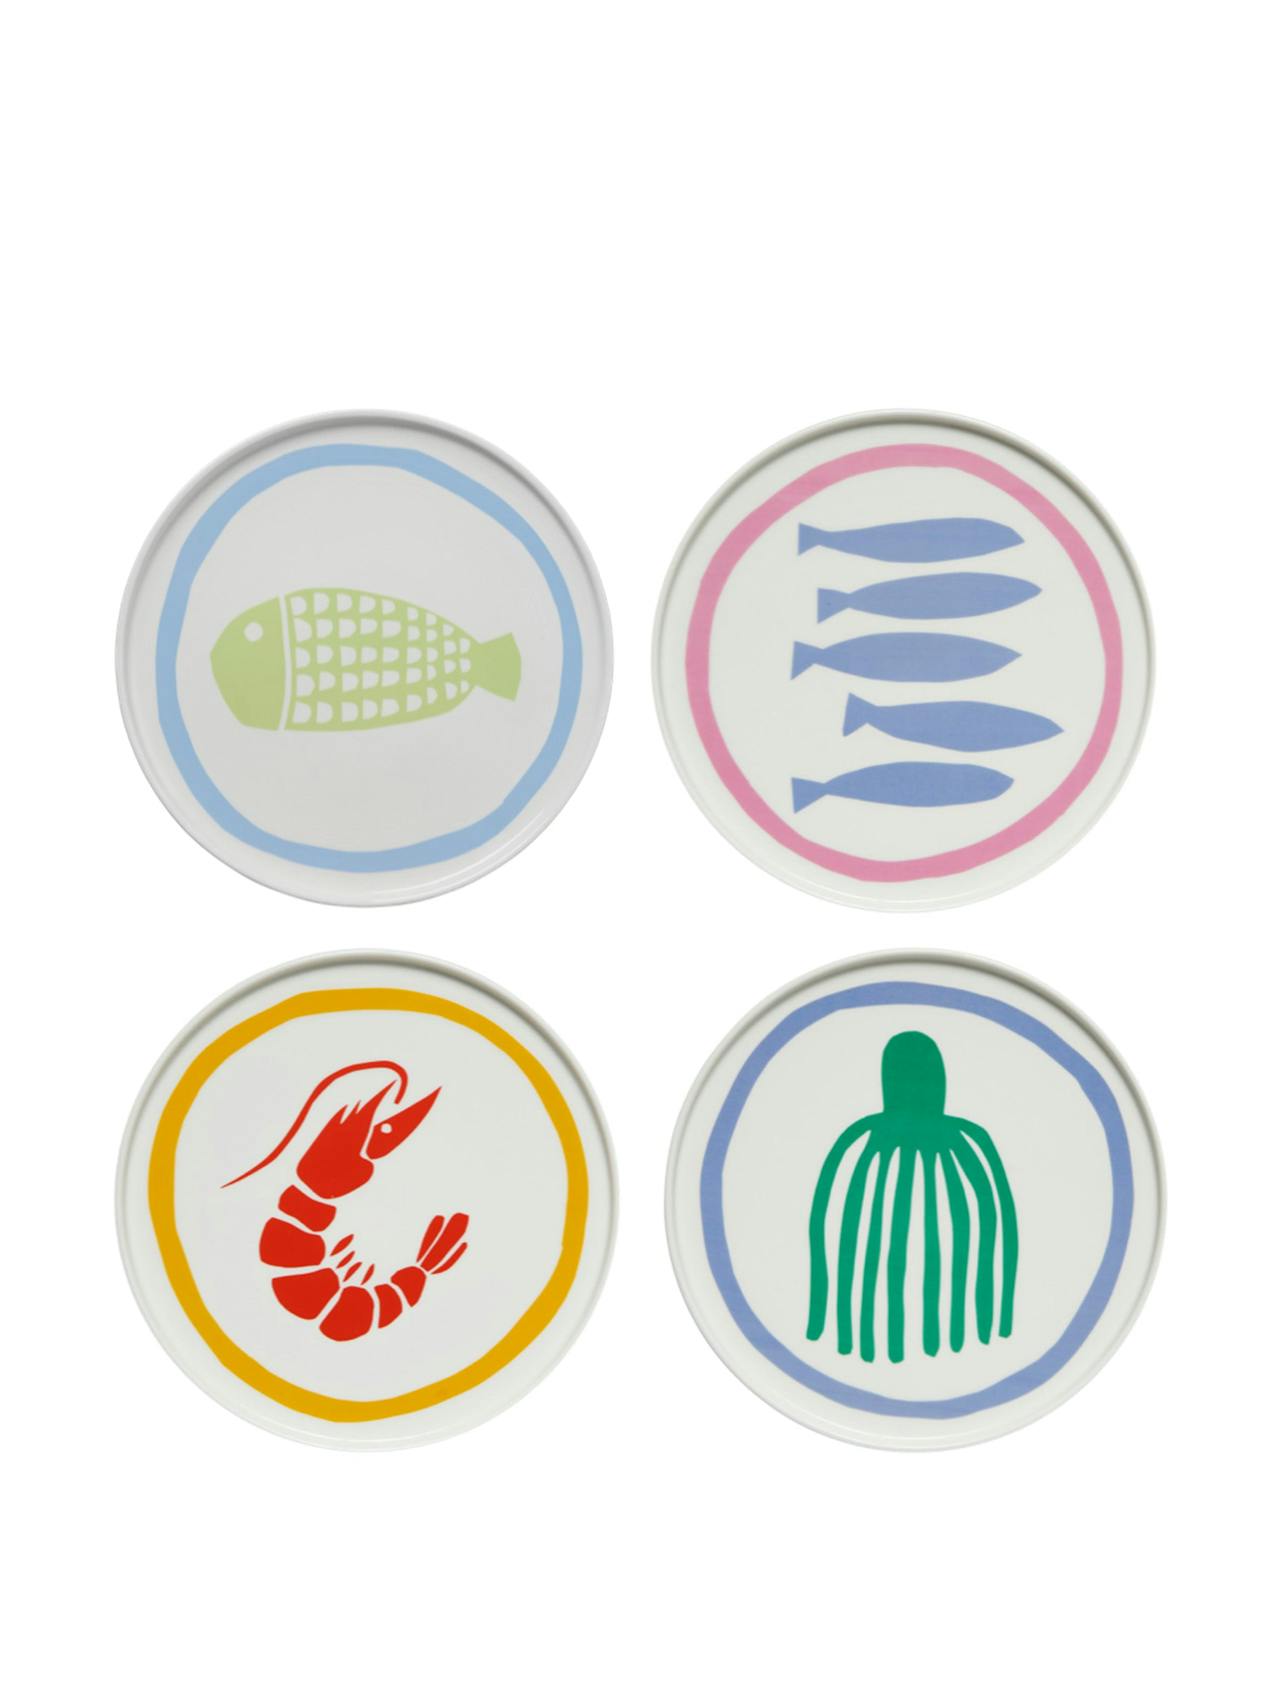 Essential seafood plate set